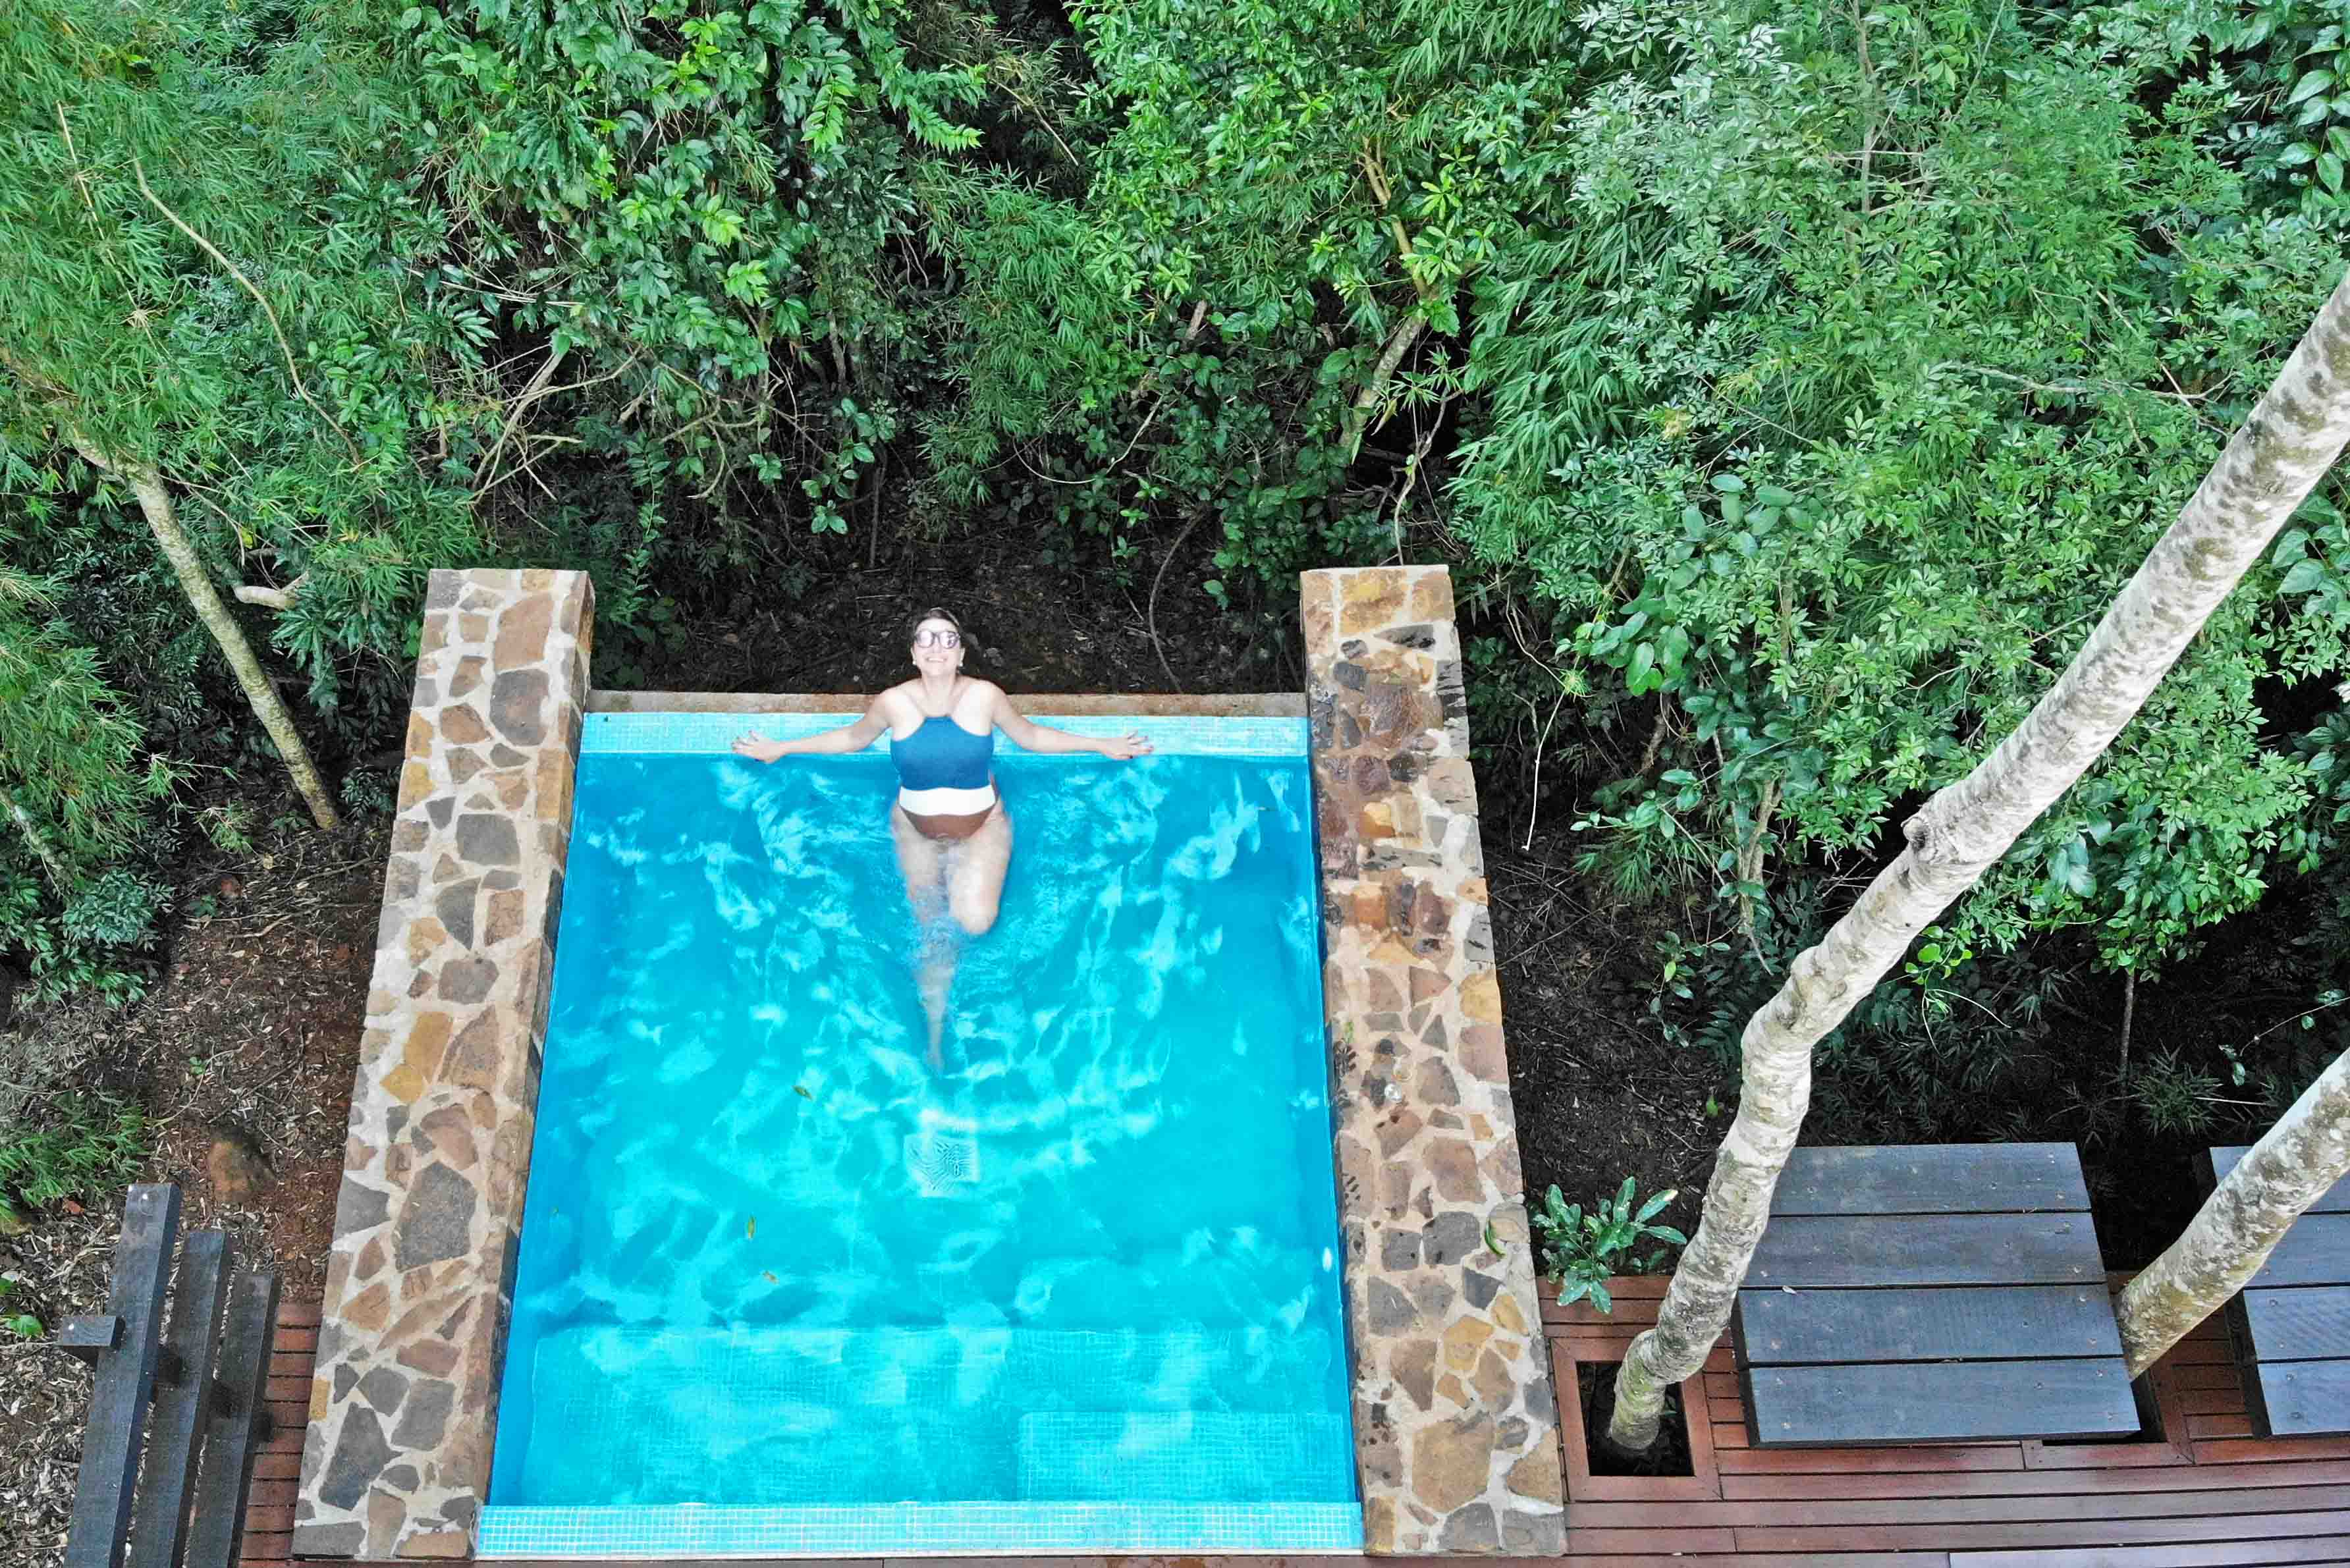 awasi iguazu villa standard private pool 